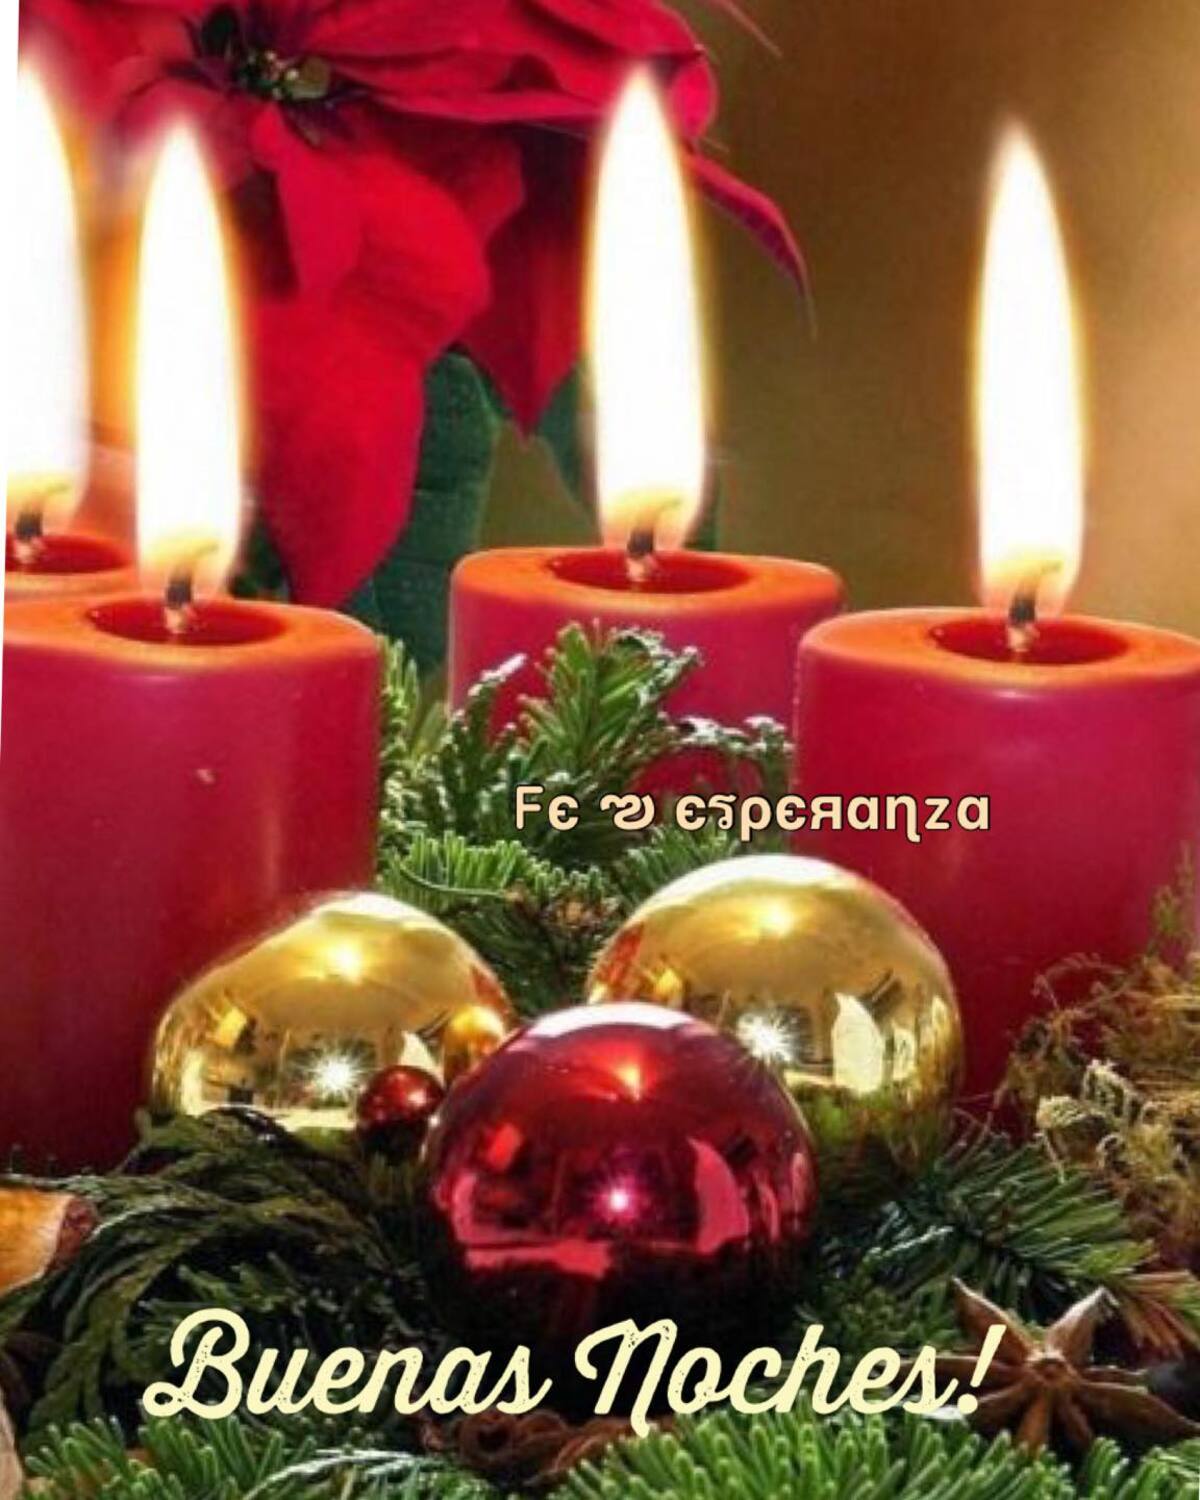 Ímágenes navideñas para desear Buenas Noches (2)